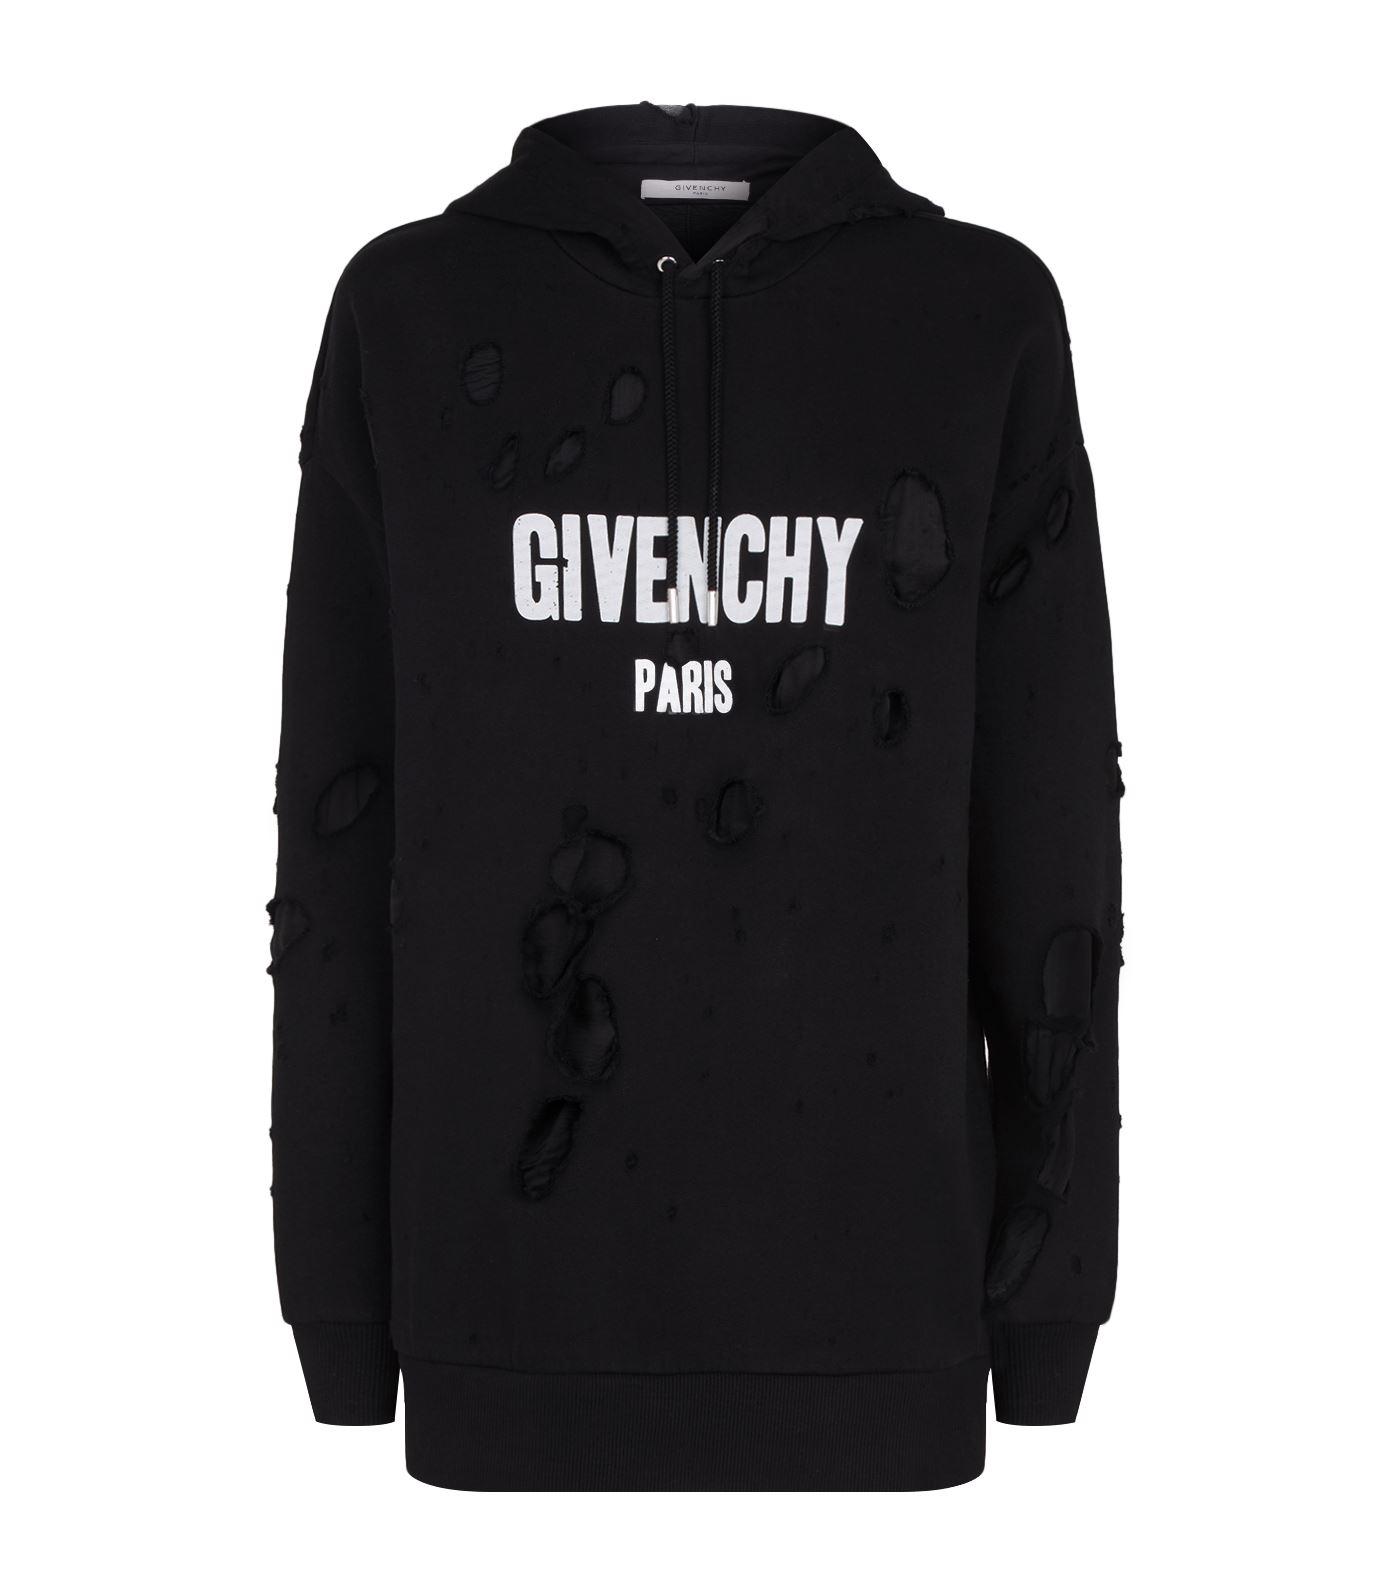 Givenchy Denim Destroyed Logo Hoodie in Black for Men - Lyst